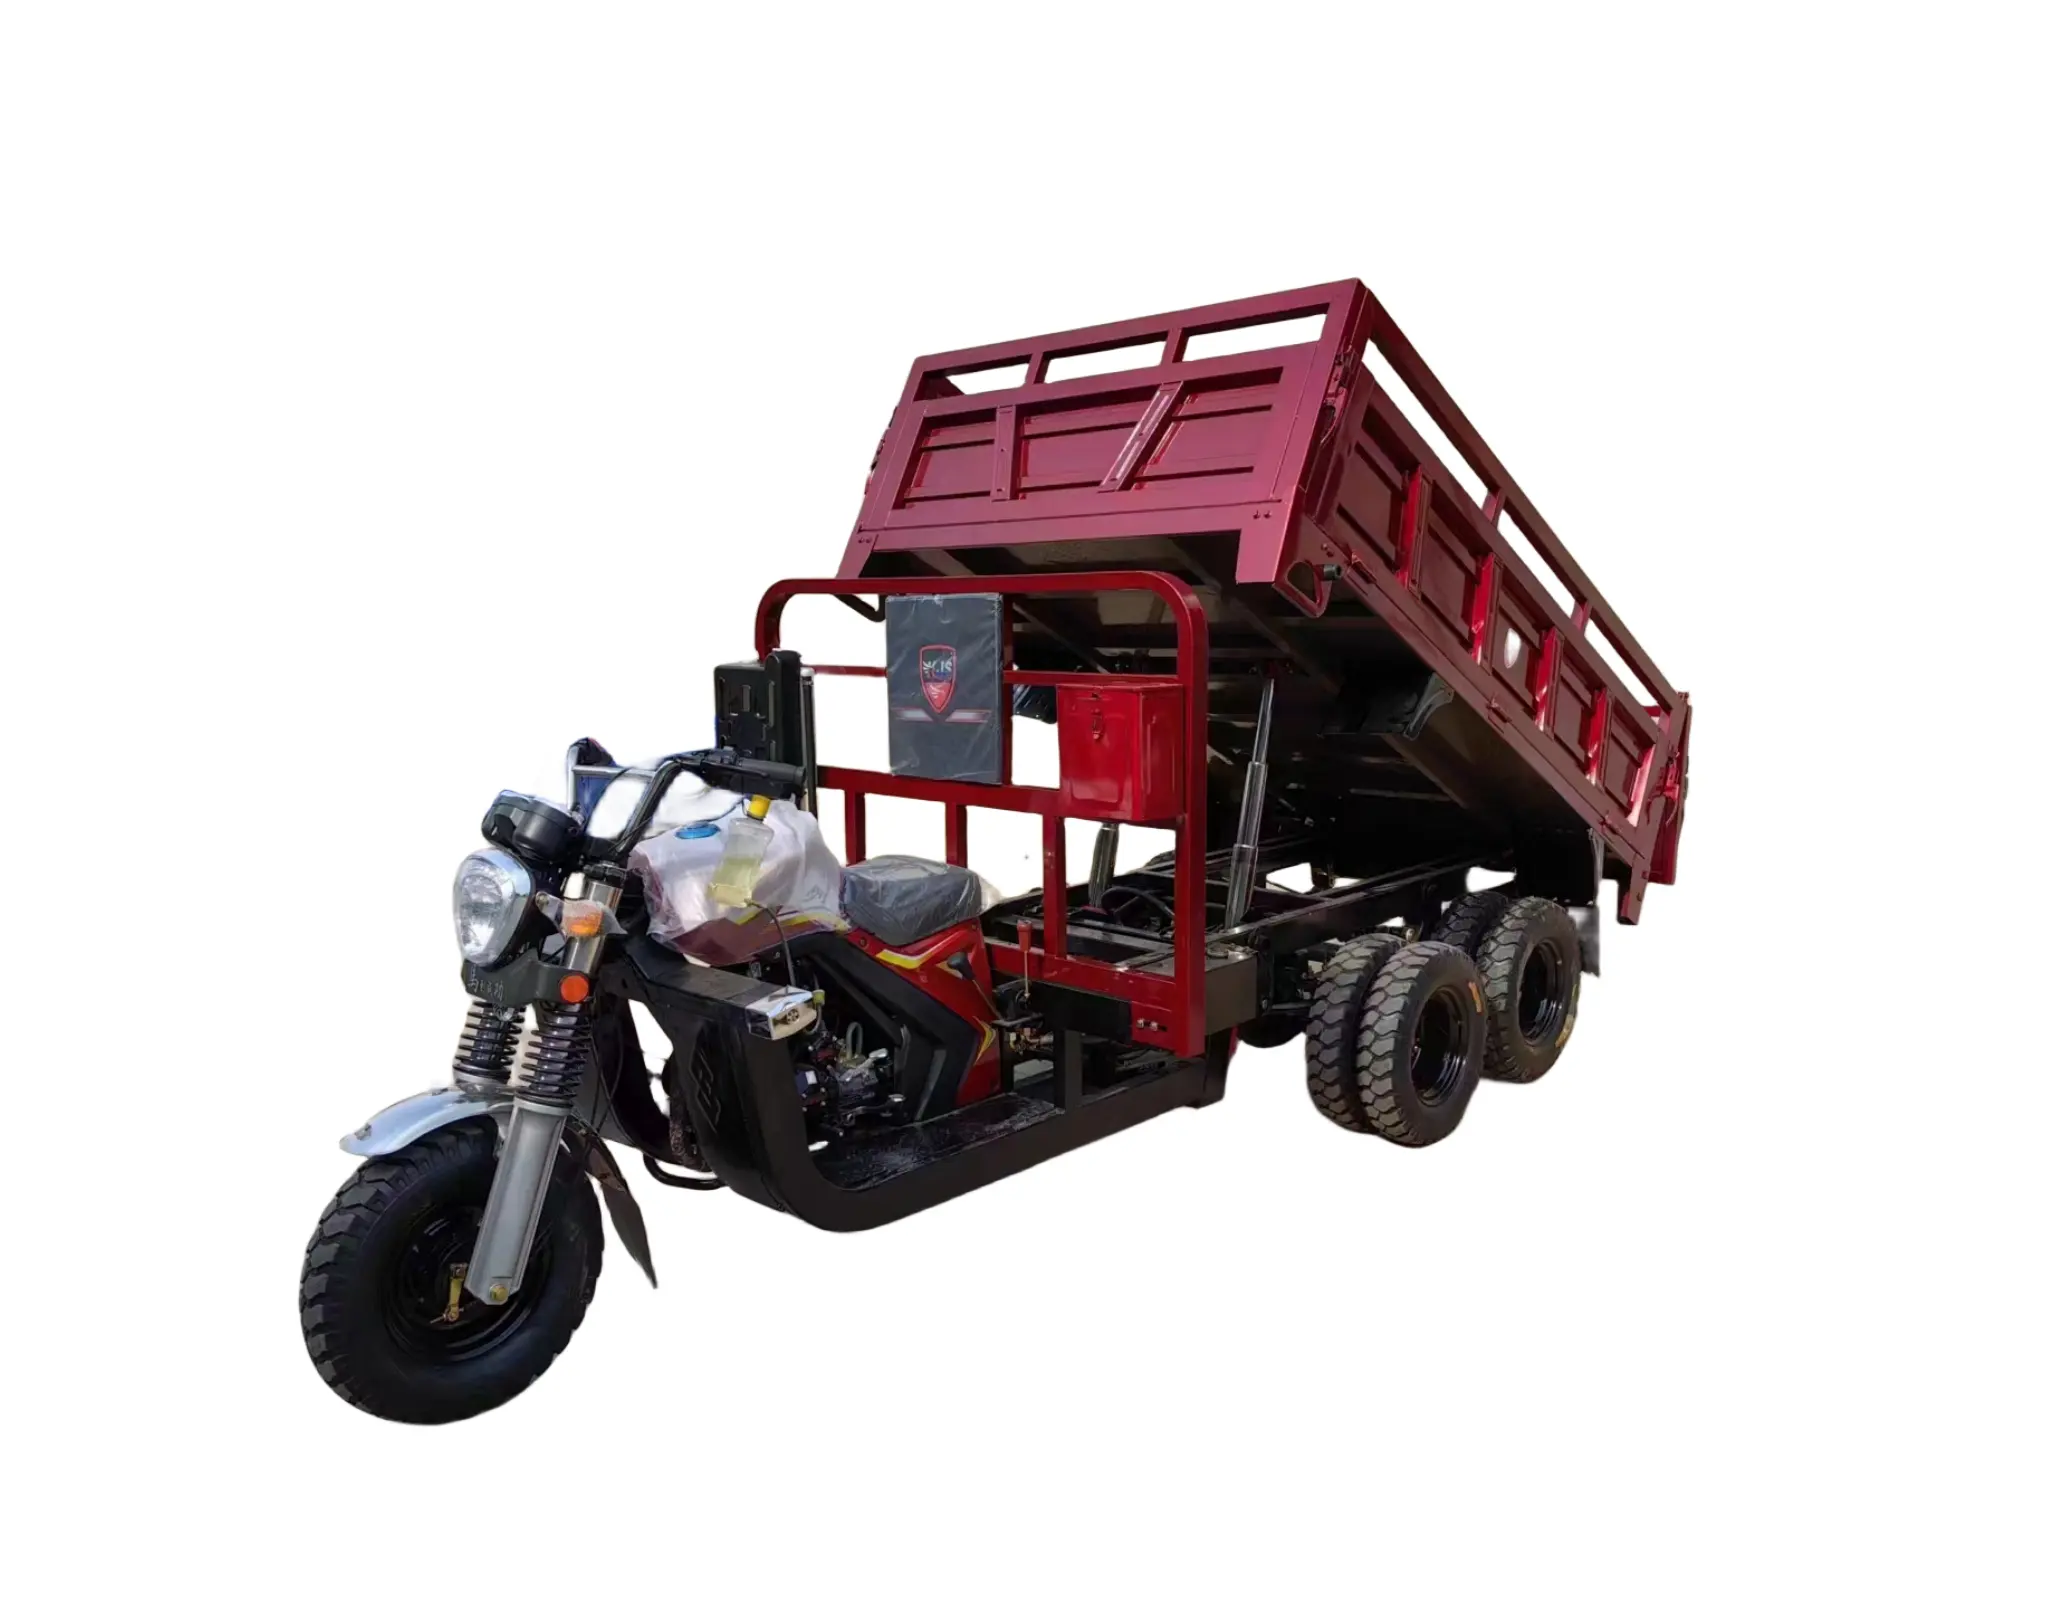 Penjualan langsung dari pabrik 300CC kargo sampah motor listrik dewasa sepeda motor roda tiga murah 9 roda sepeda motor